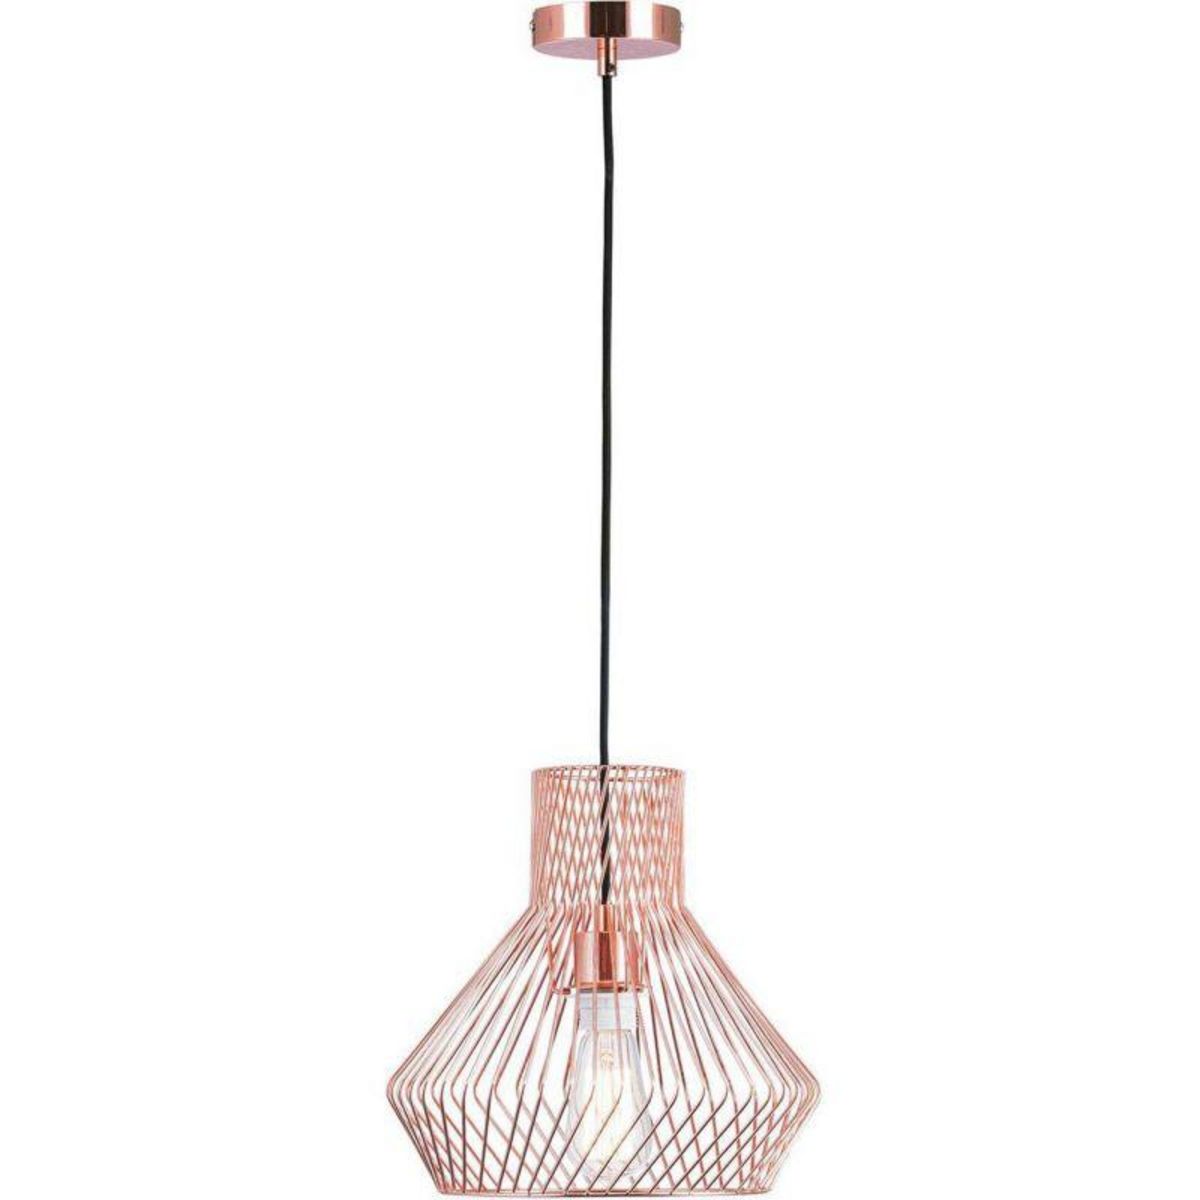 Paris Prix Lampe Suspension Design  Geraldine  134cm Cuivre